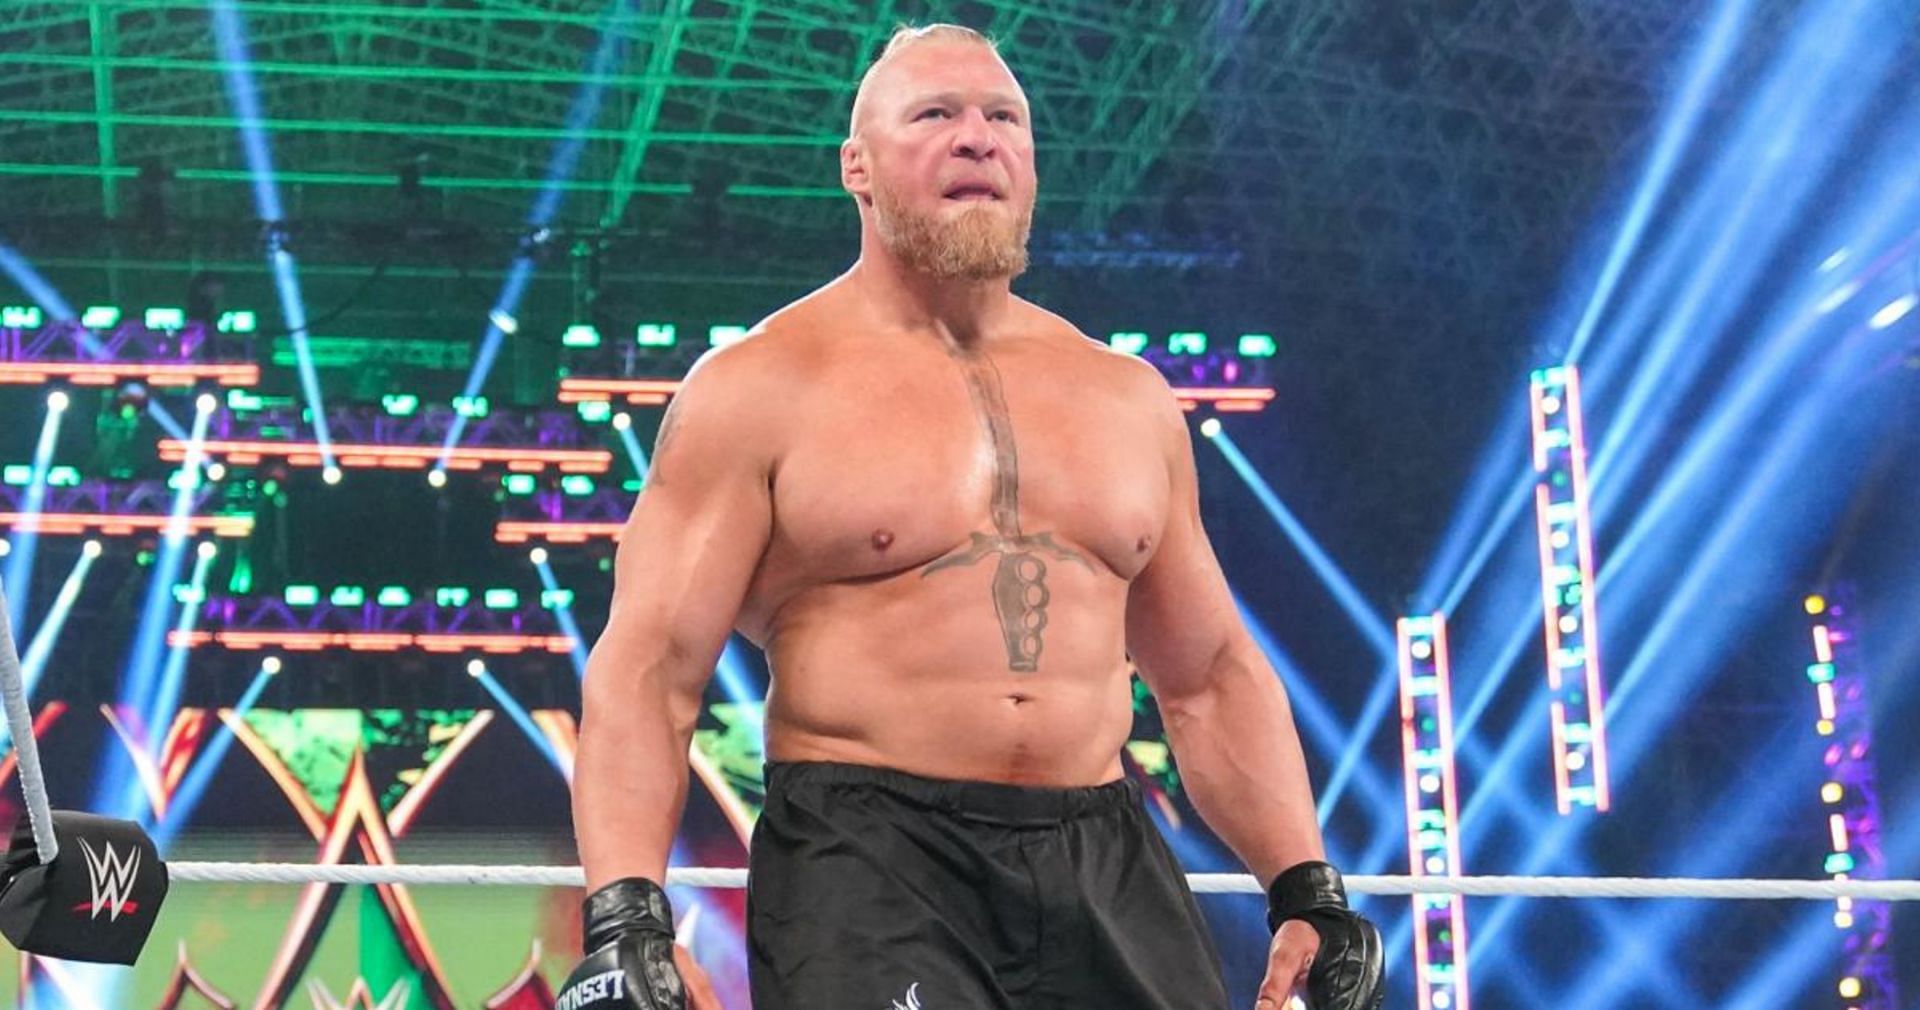 Brock Lesnar was last seen at WWE Crown Jewel